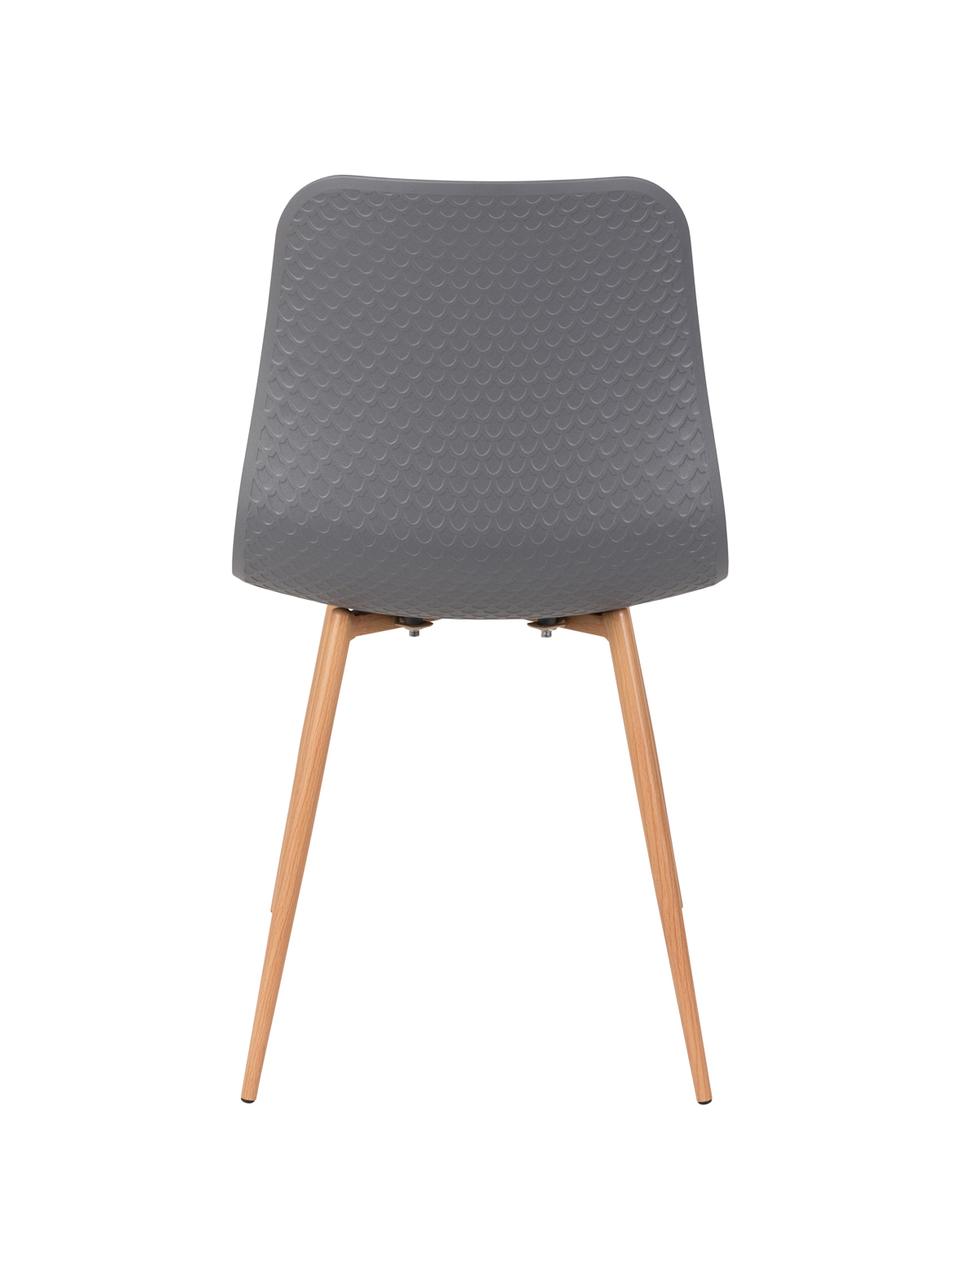 Stühle Leon, 2 Stück, Sitzschale: Polypropylen, Beine: Metall mit Kunststoffbesc, Grau, 44 x 80 cm